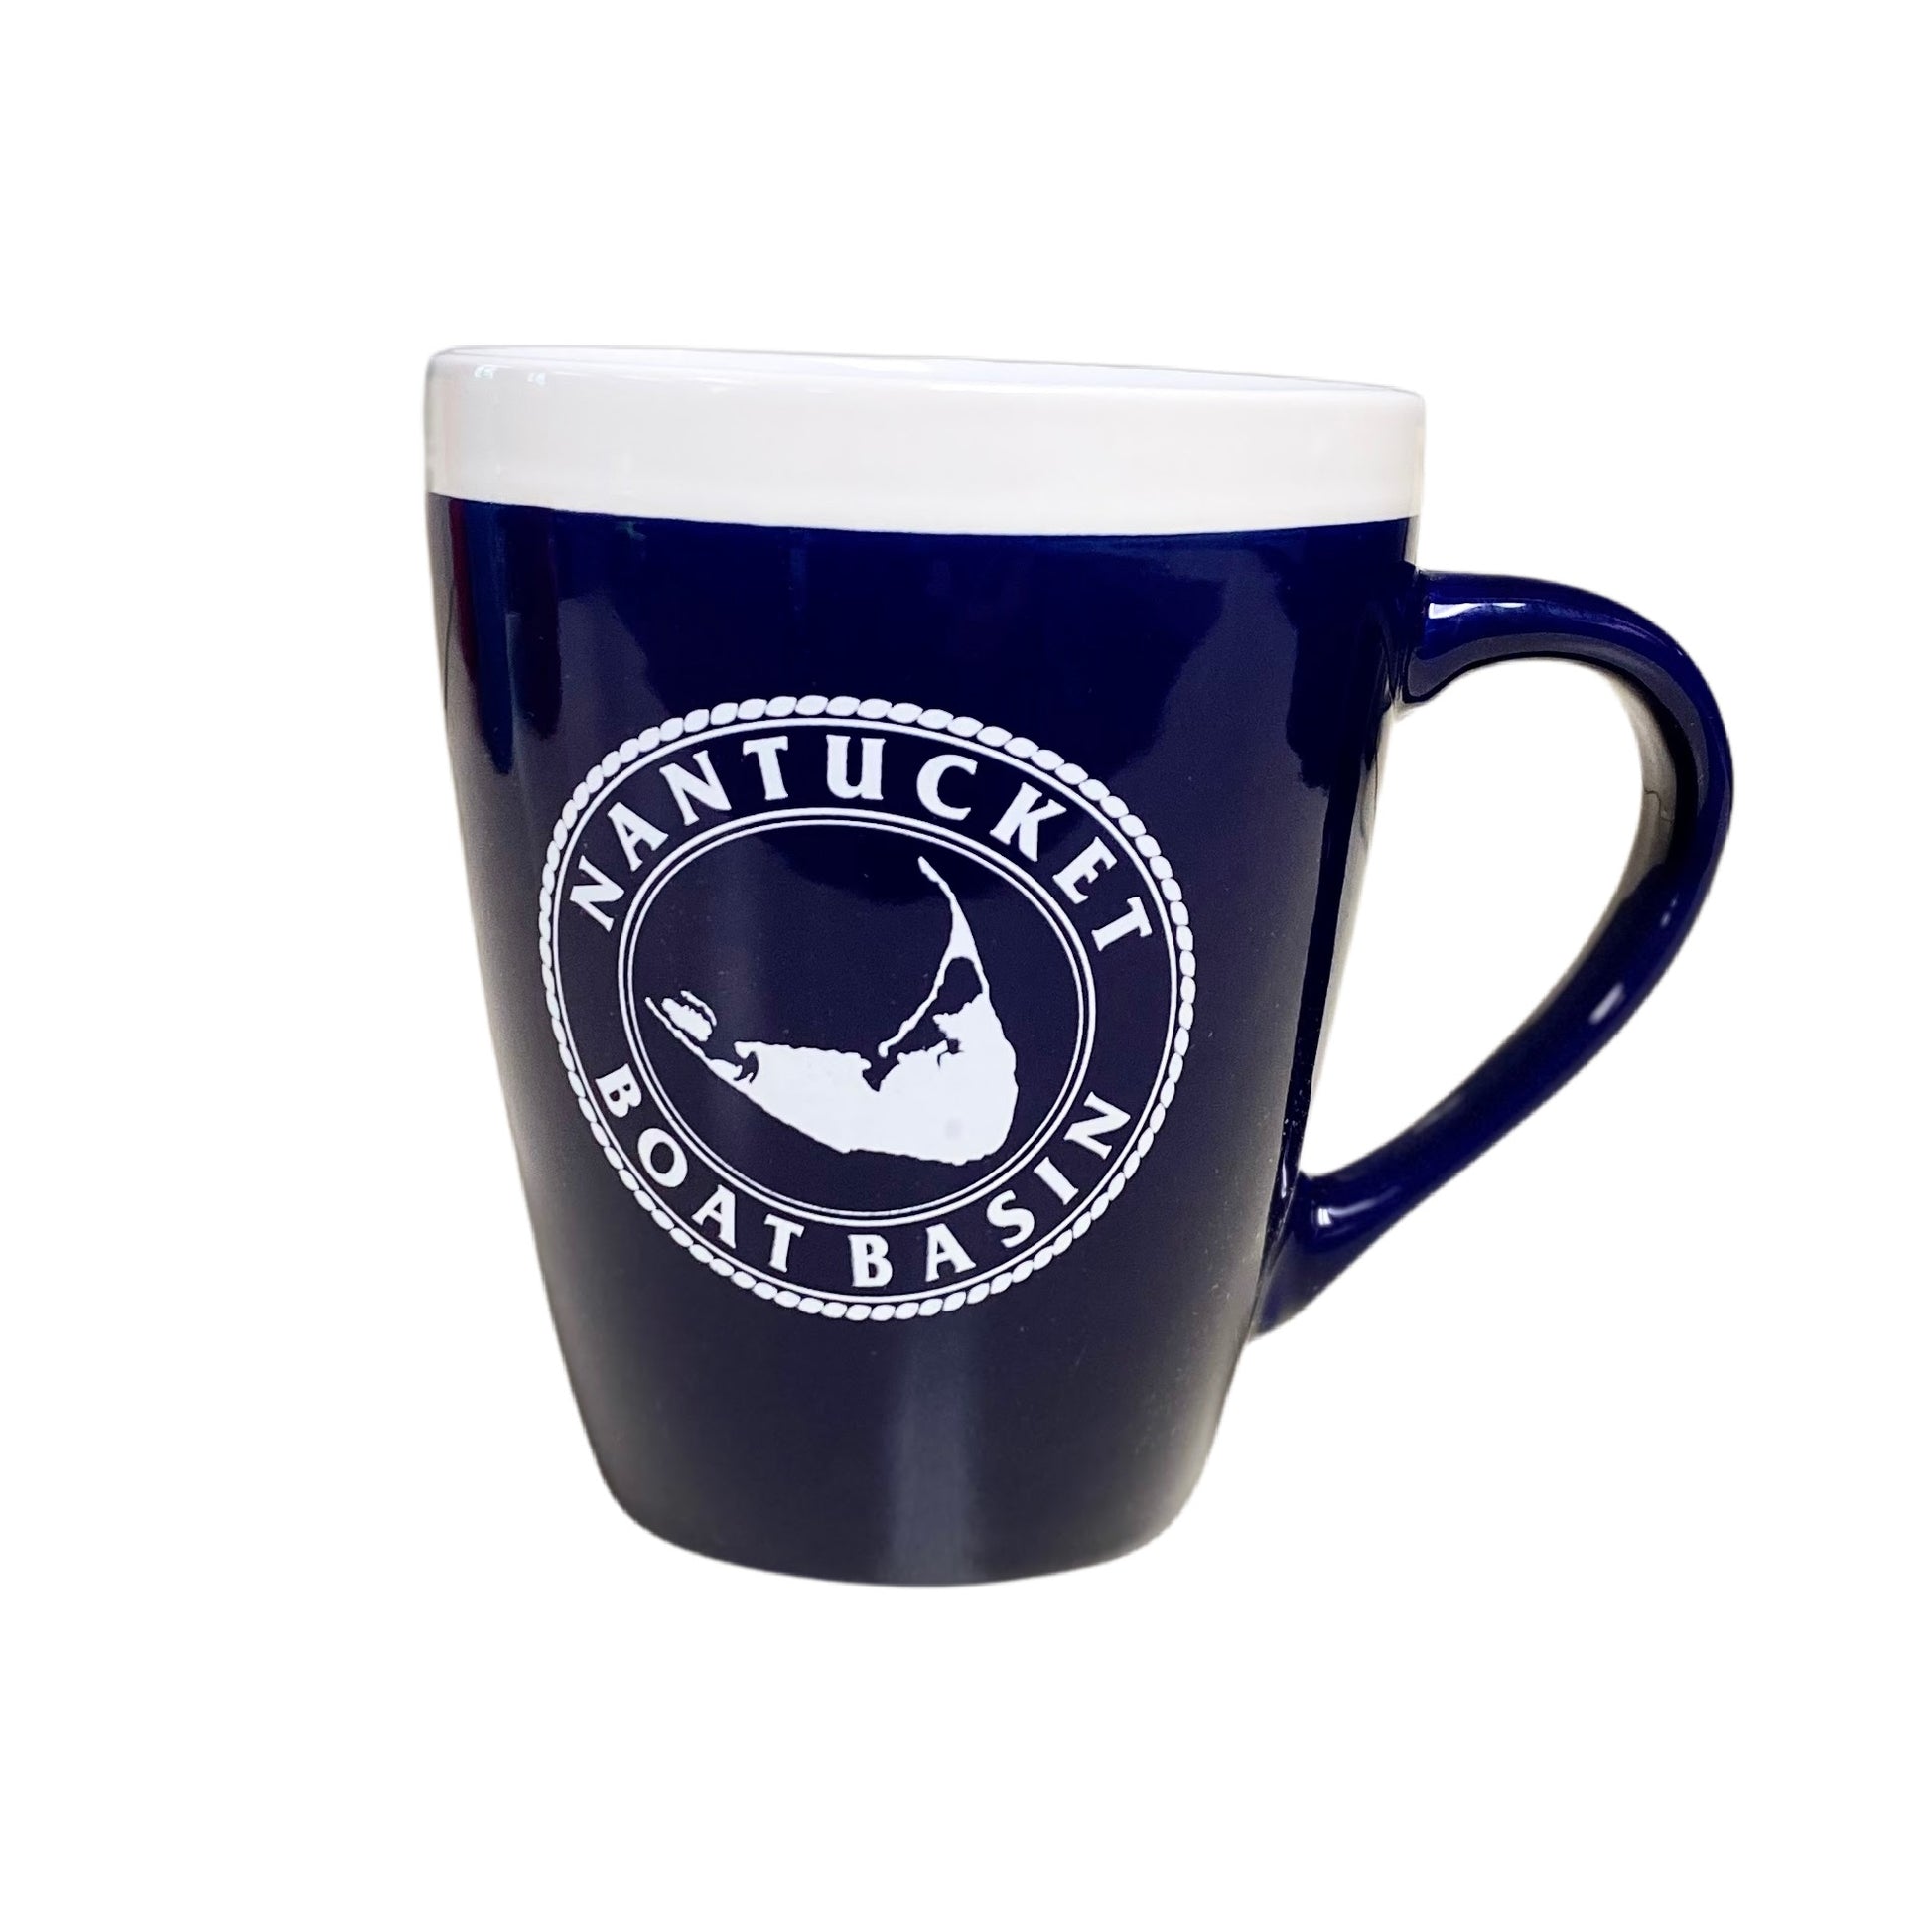 nantucket boat basin coffee cup